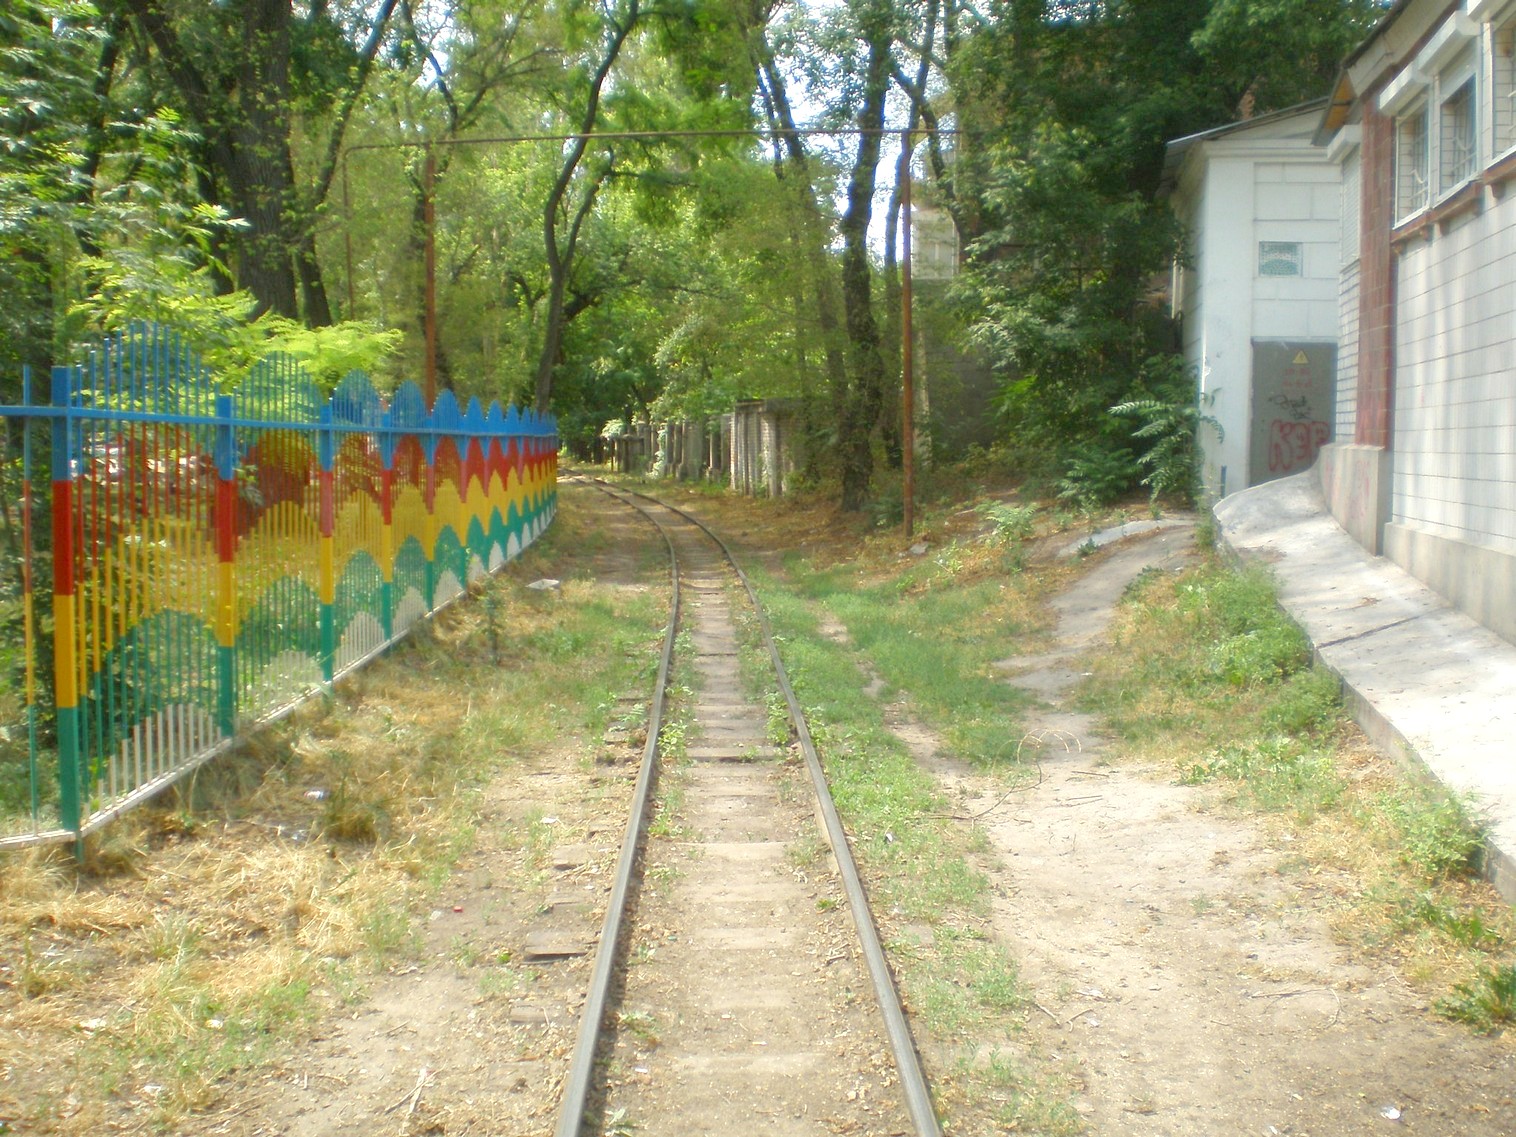 Малая Приднепровская (Днепропетровская) детская железная дорога  —  фотографии, сделанные в 2009 году (часть 1)